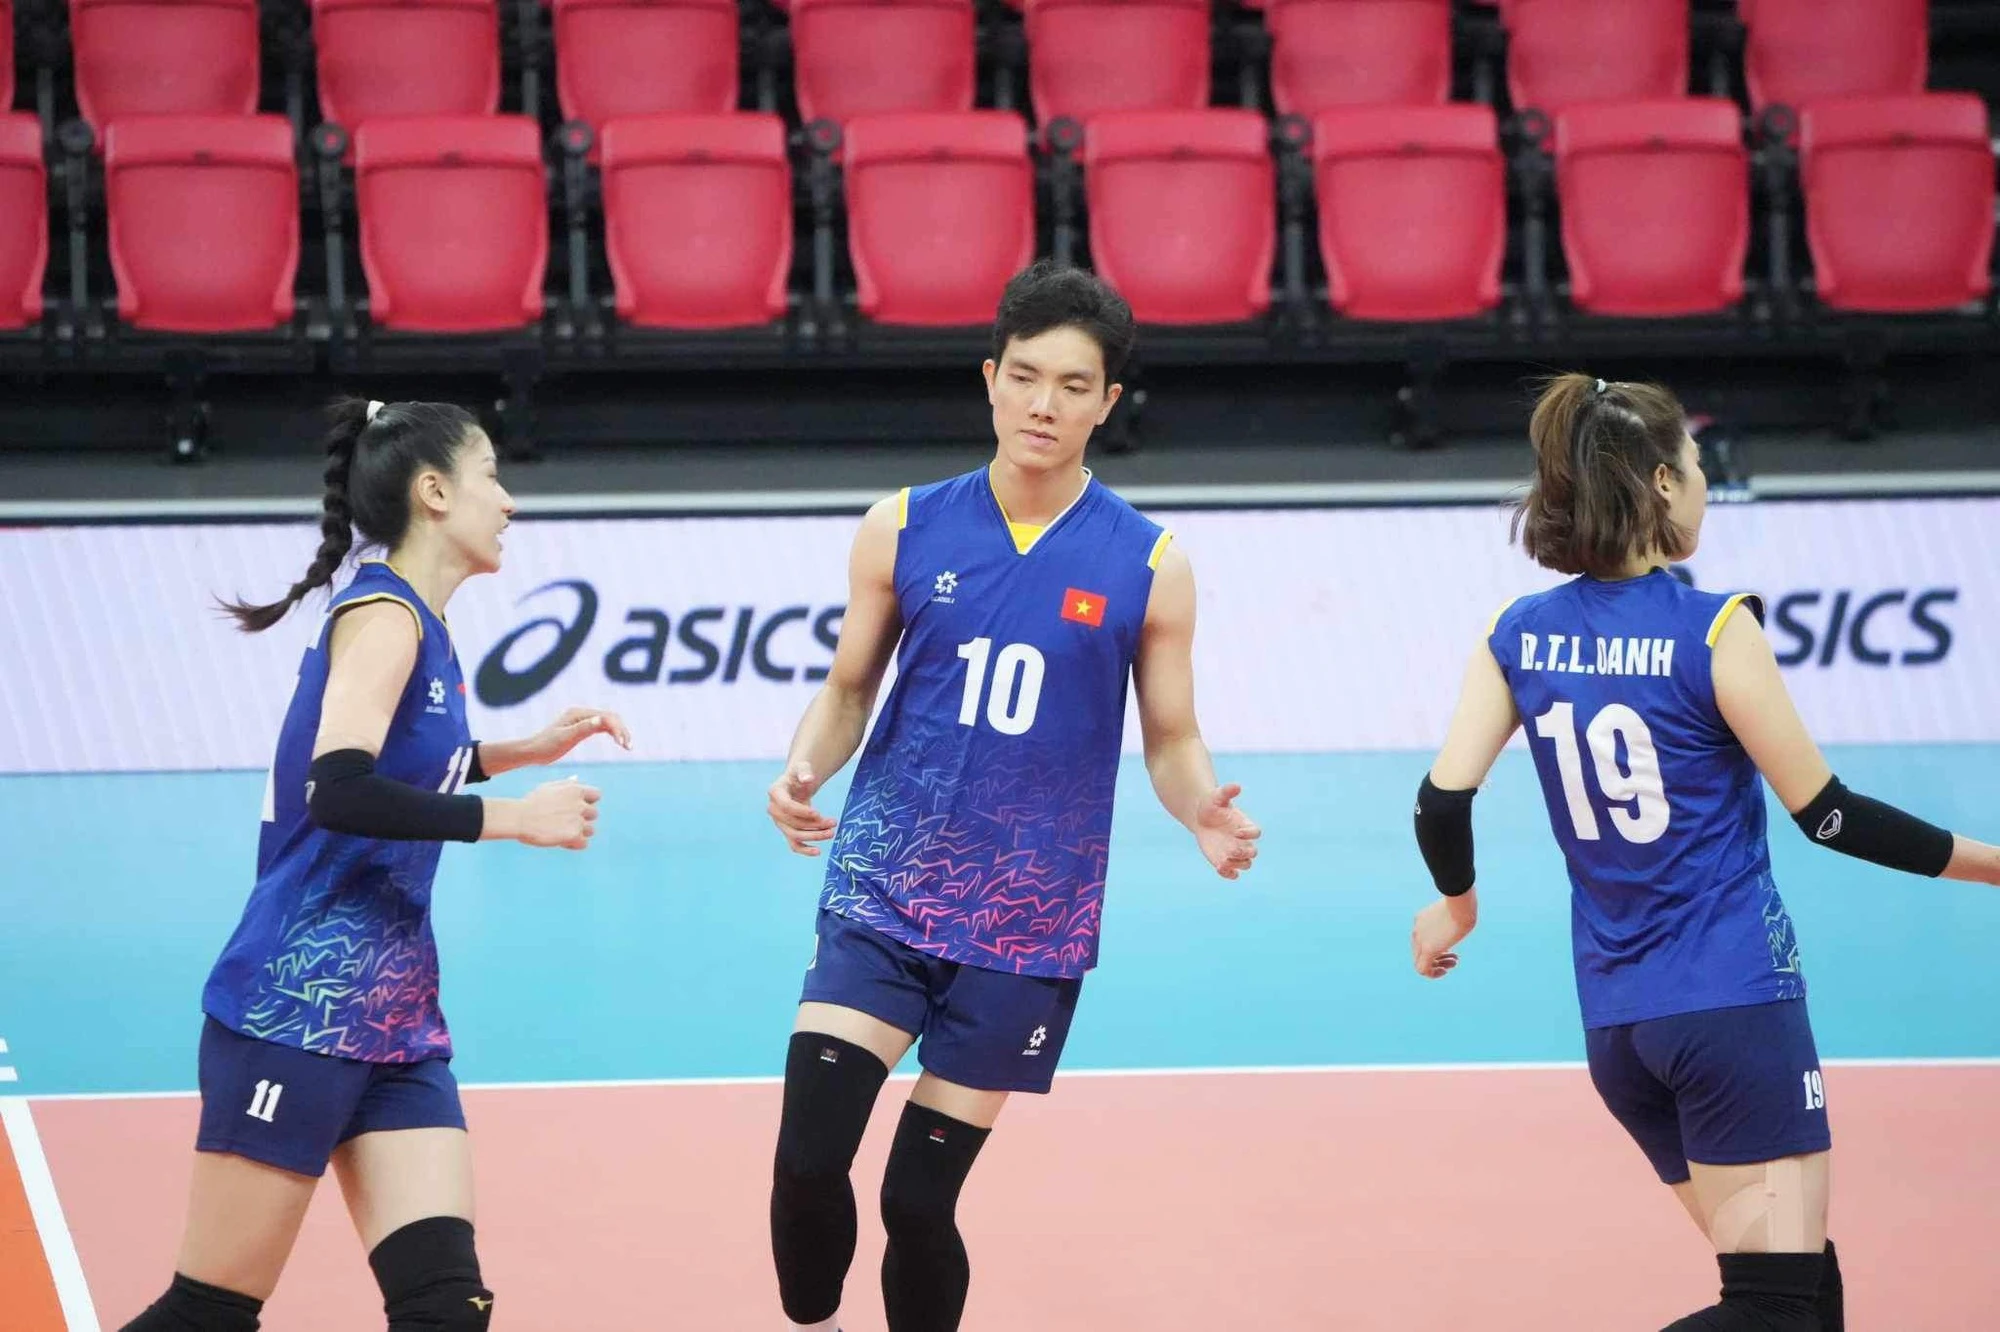 Bích Tuyền đập bóng 'sấm sét' giúp đội tuyển bóng chuyền nữ Việt Nam đánh bại Kazakhstan